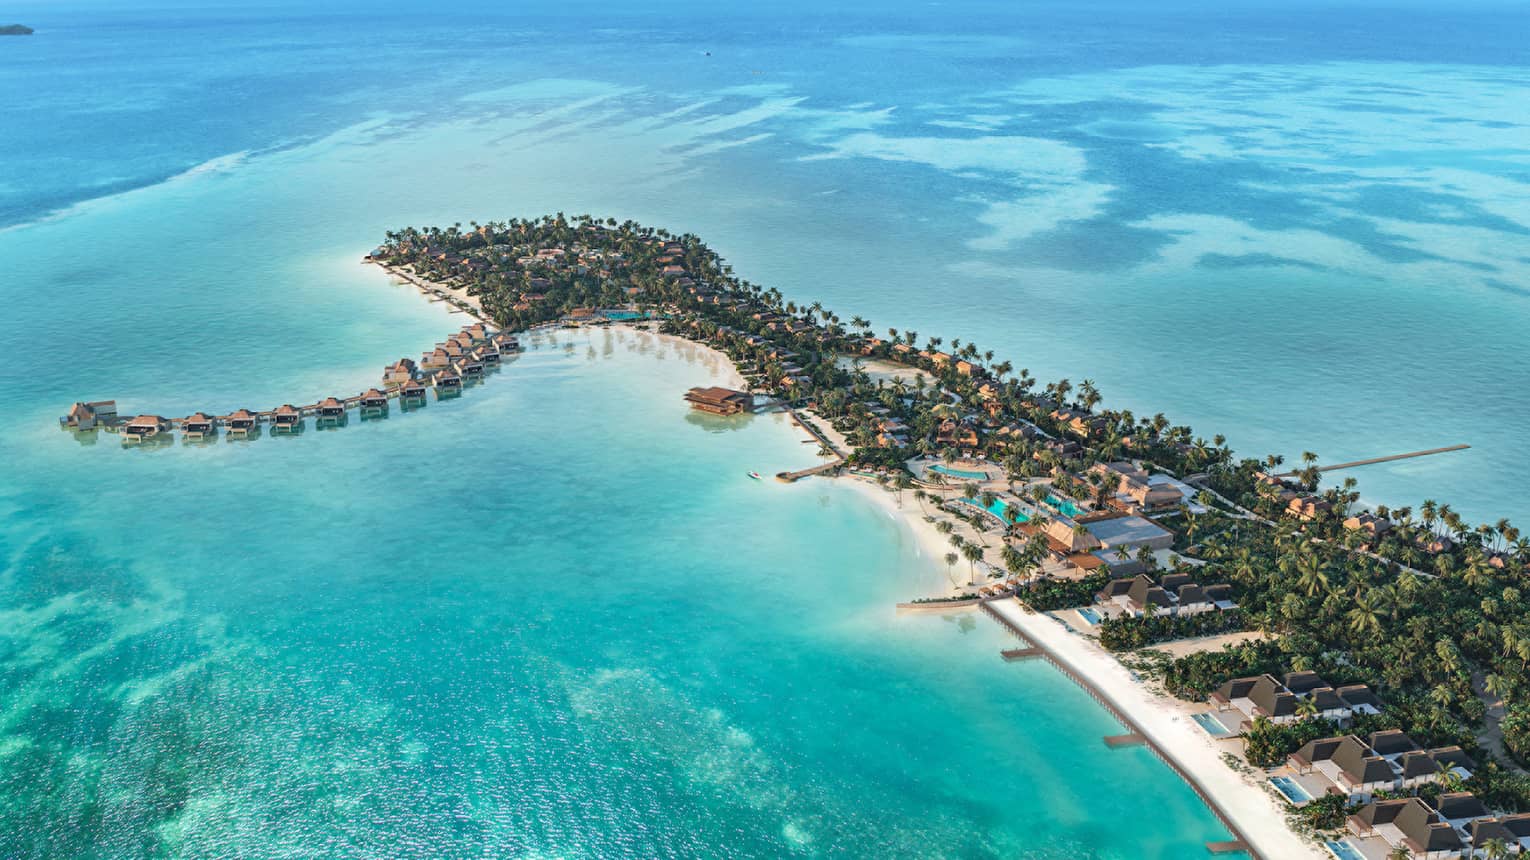 Rendering of aerial view of resort and peninsula